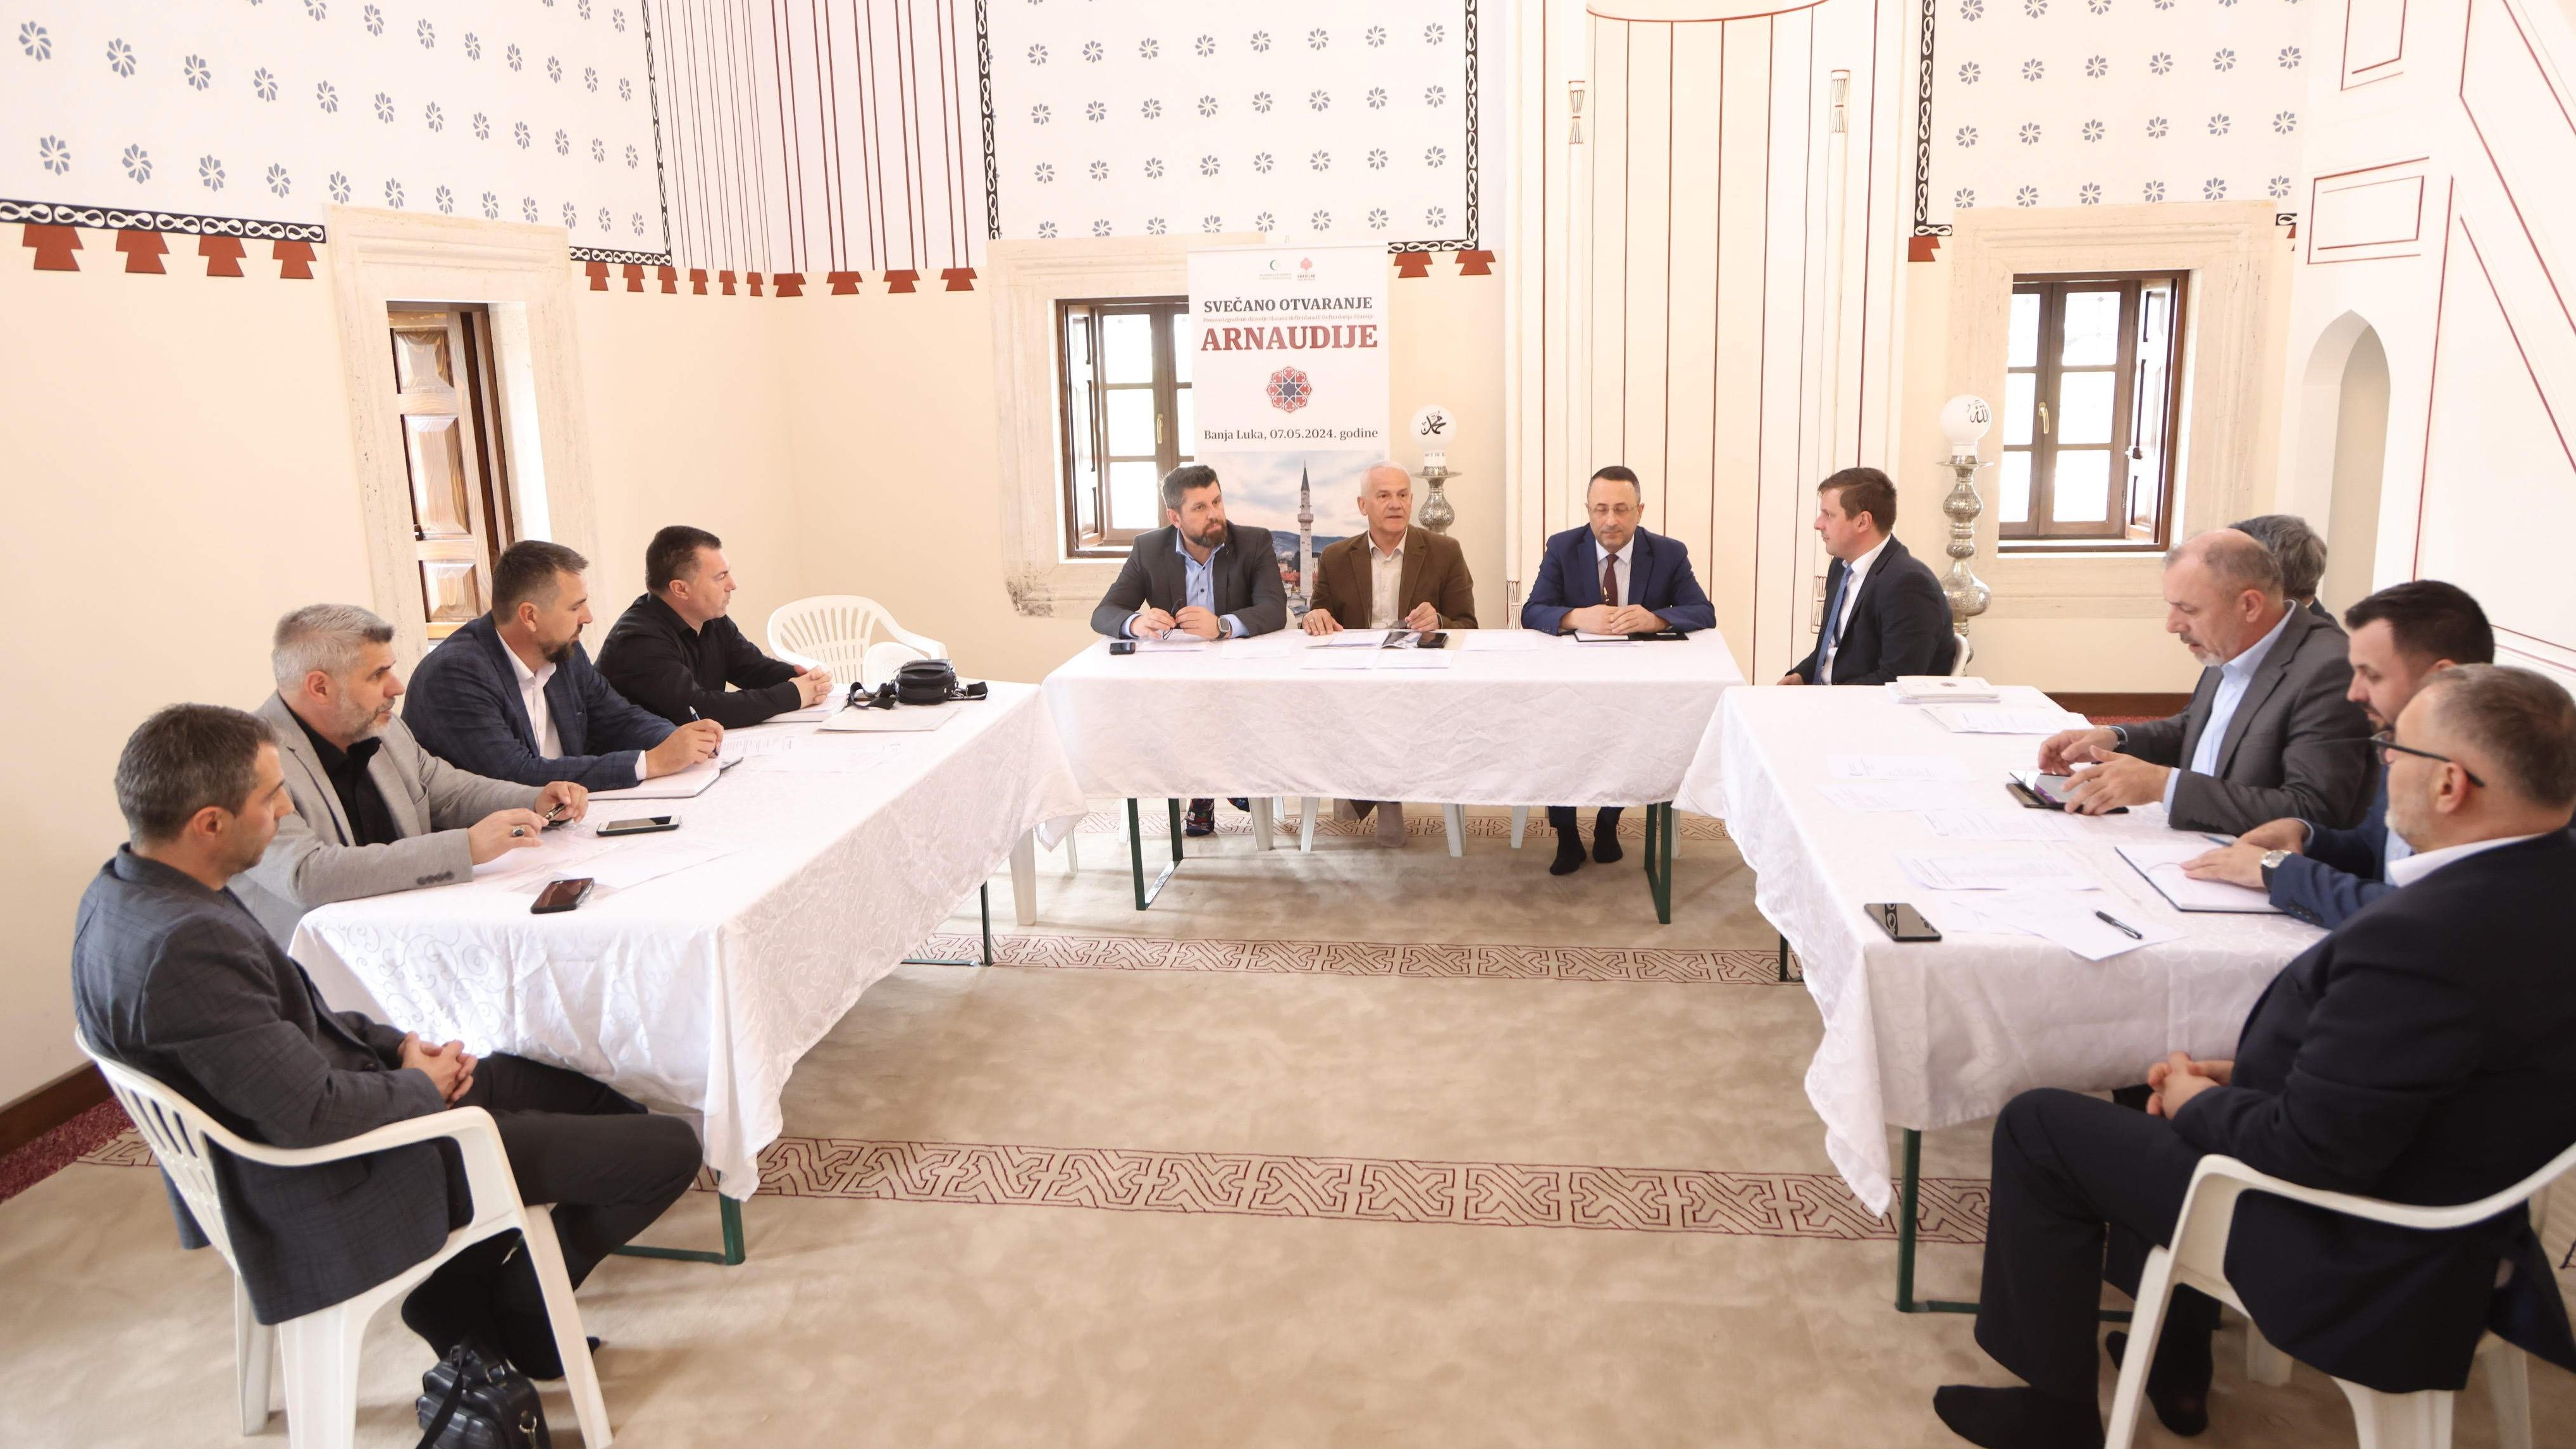 Sjednica Organizacionog odbora: Brojne visoke zvanice na otvorenju banjalučke Arnaudija-džamije